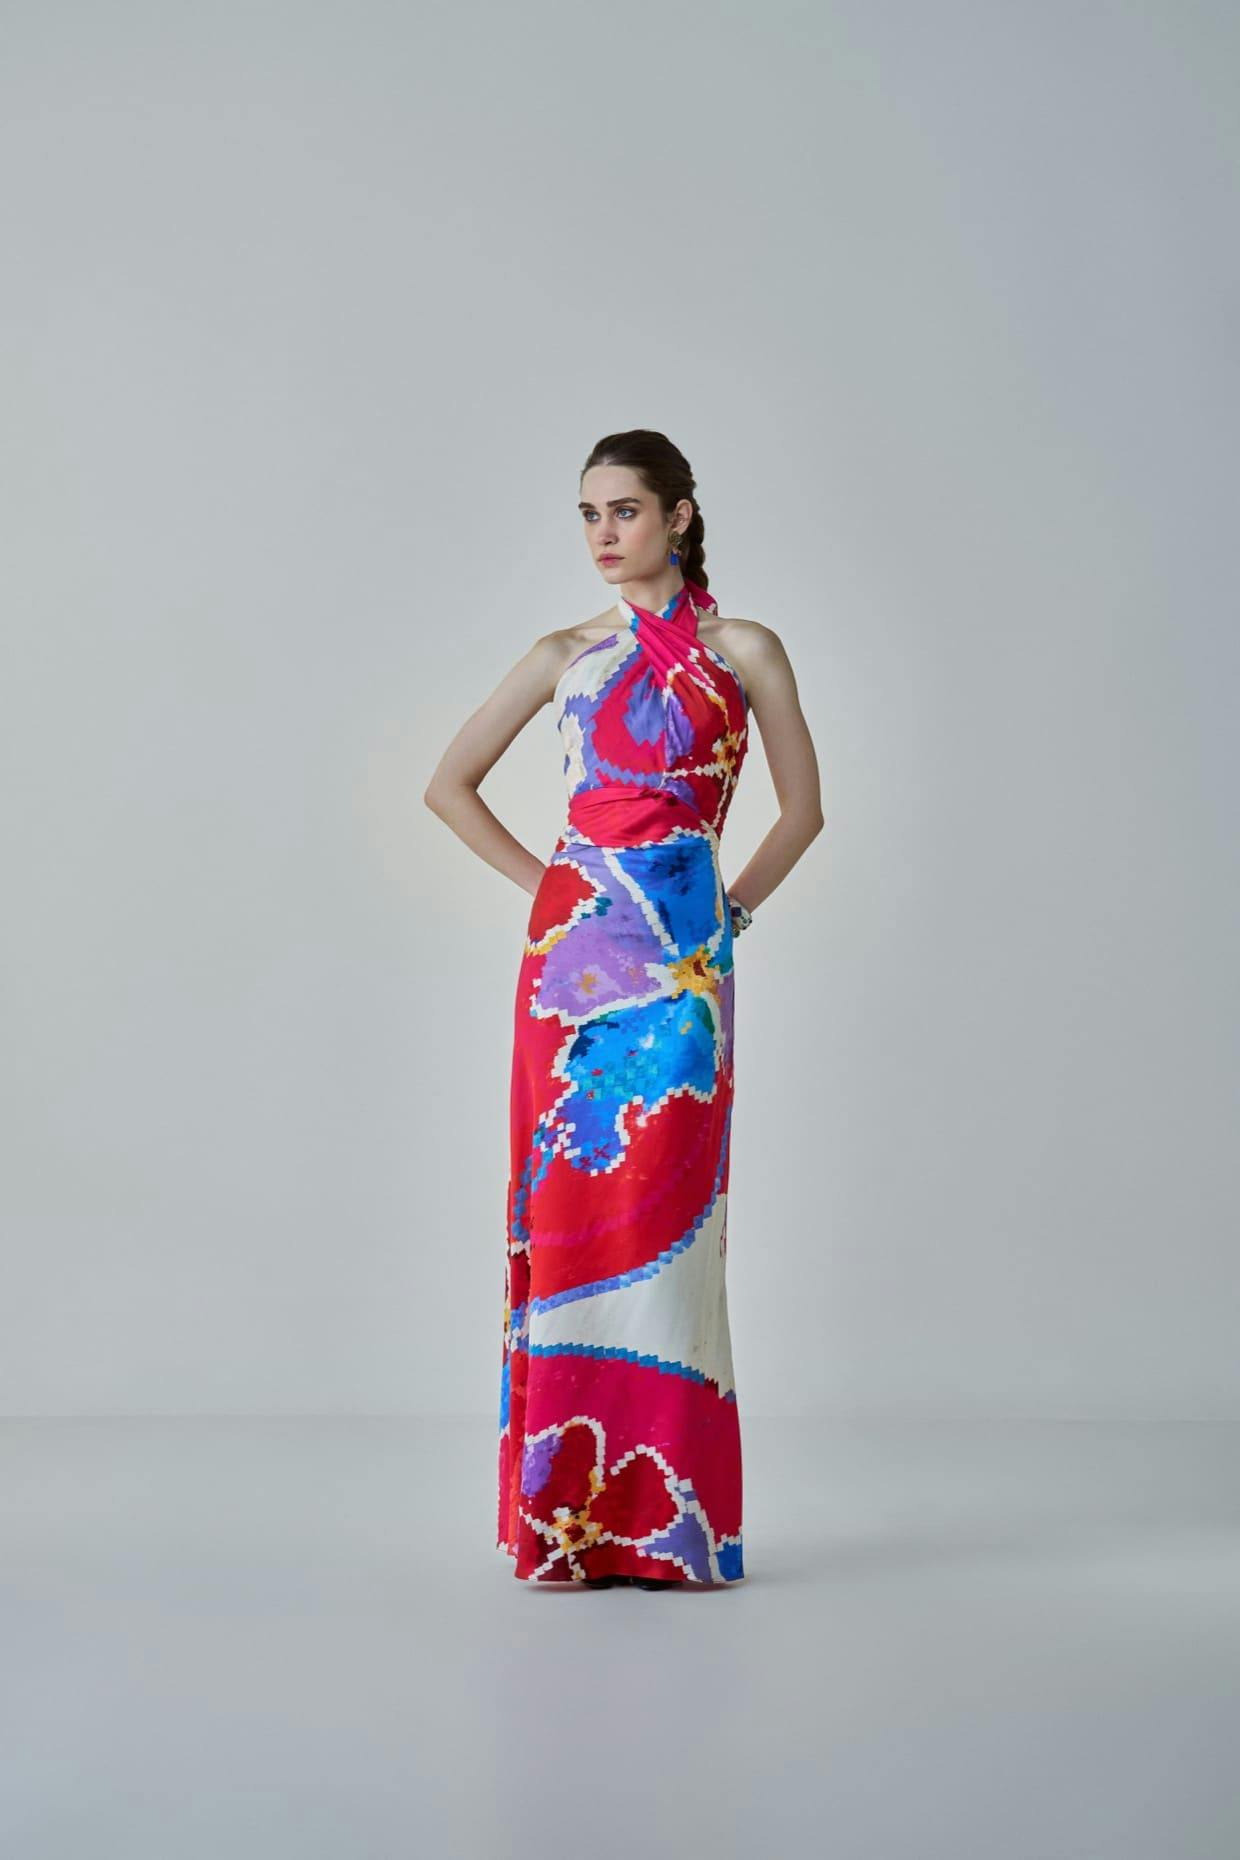 SHAILEE DRESS, a product by Saaksha & Kinni 